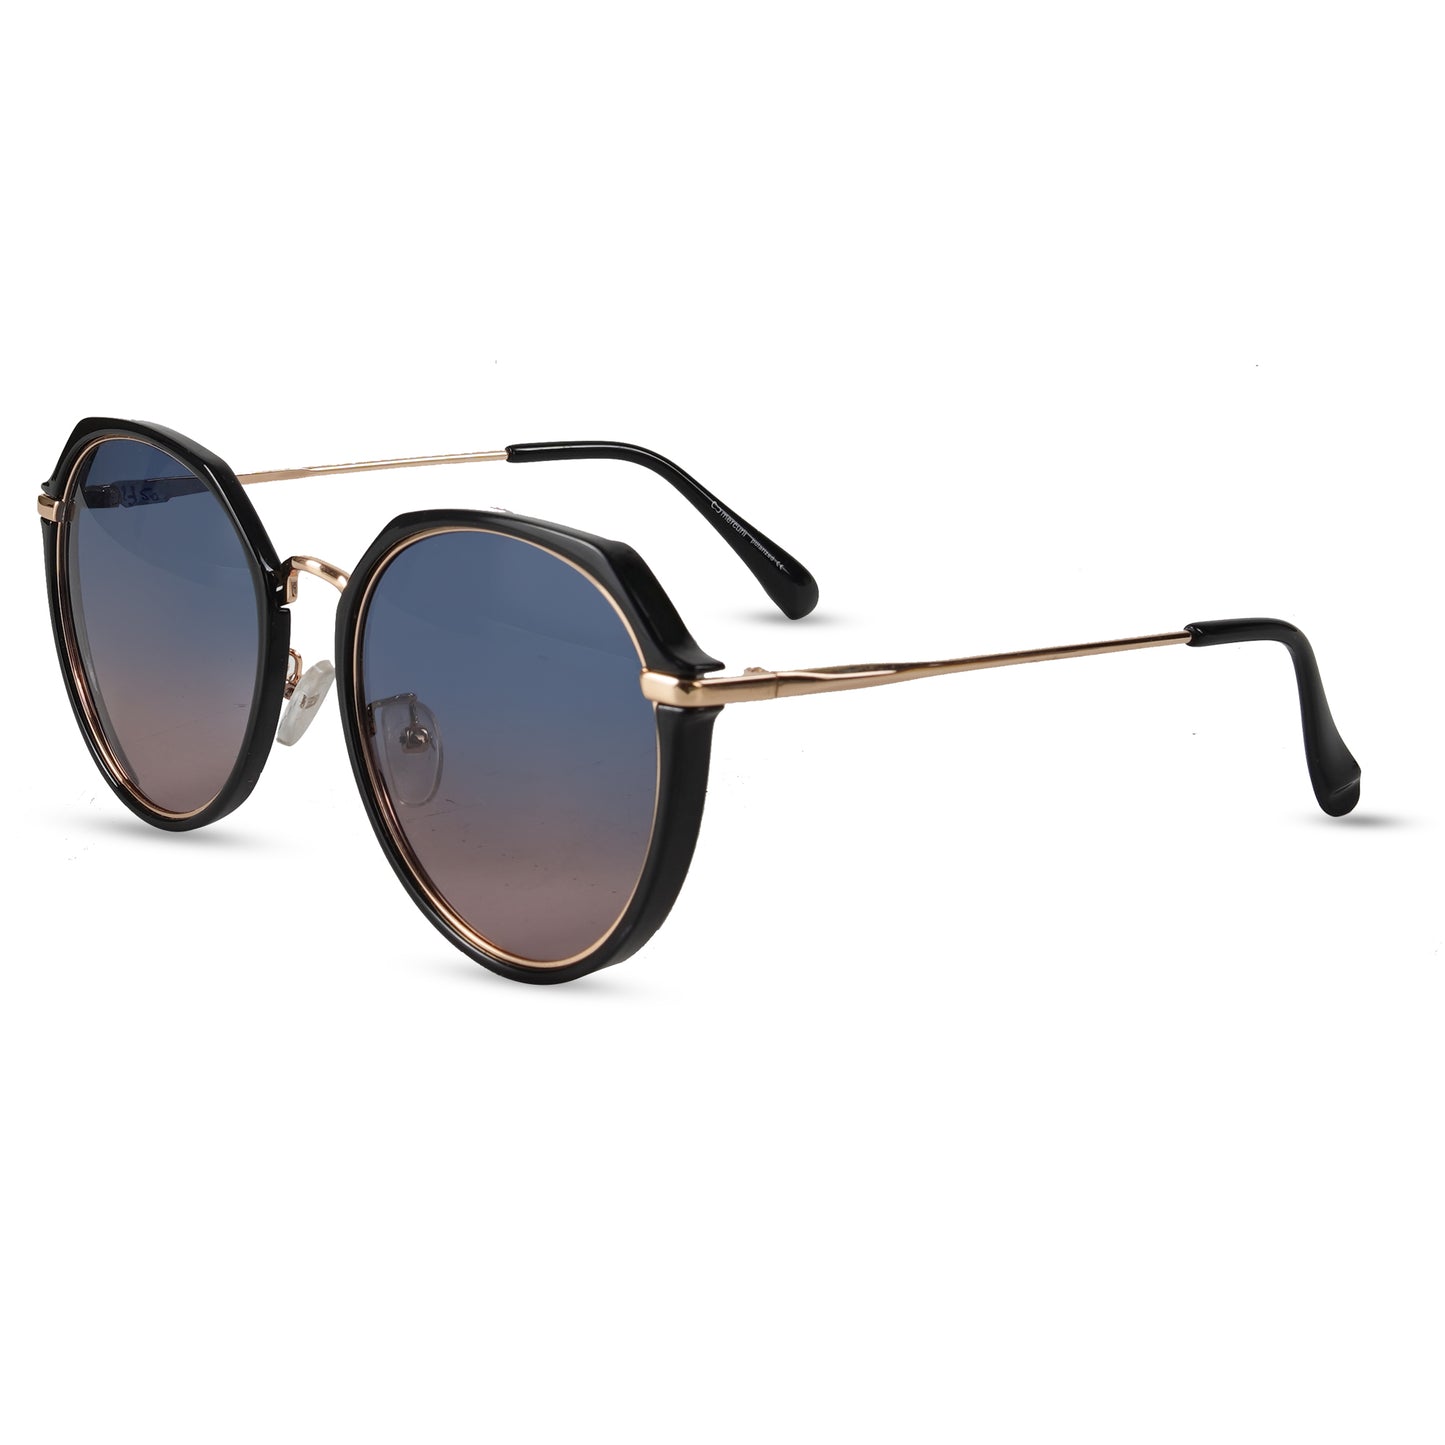 Loscomun Polarized Black Gold Round Sunglasses